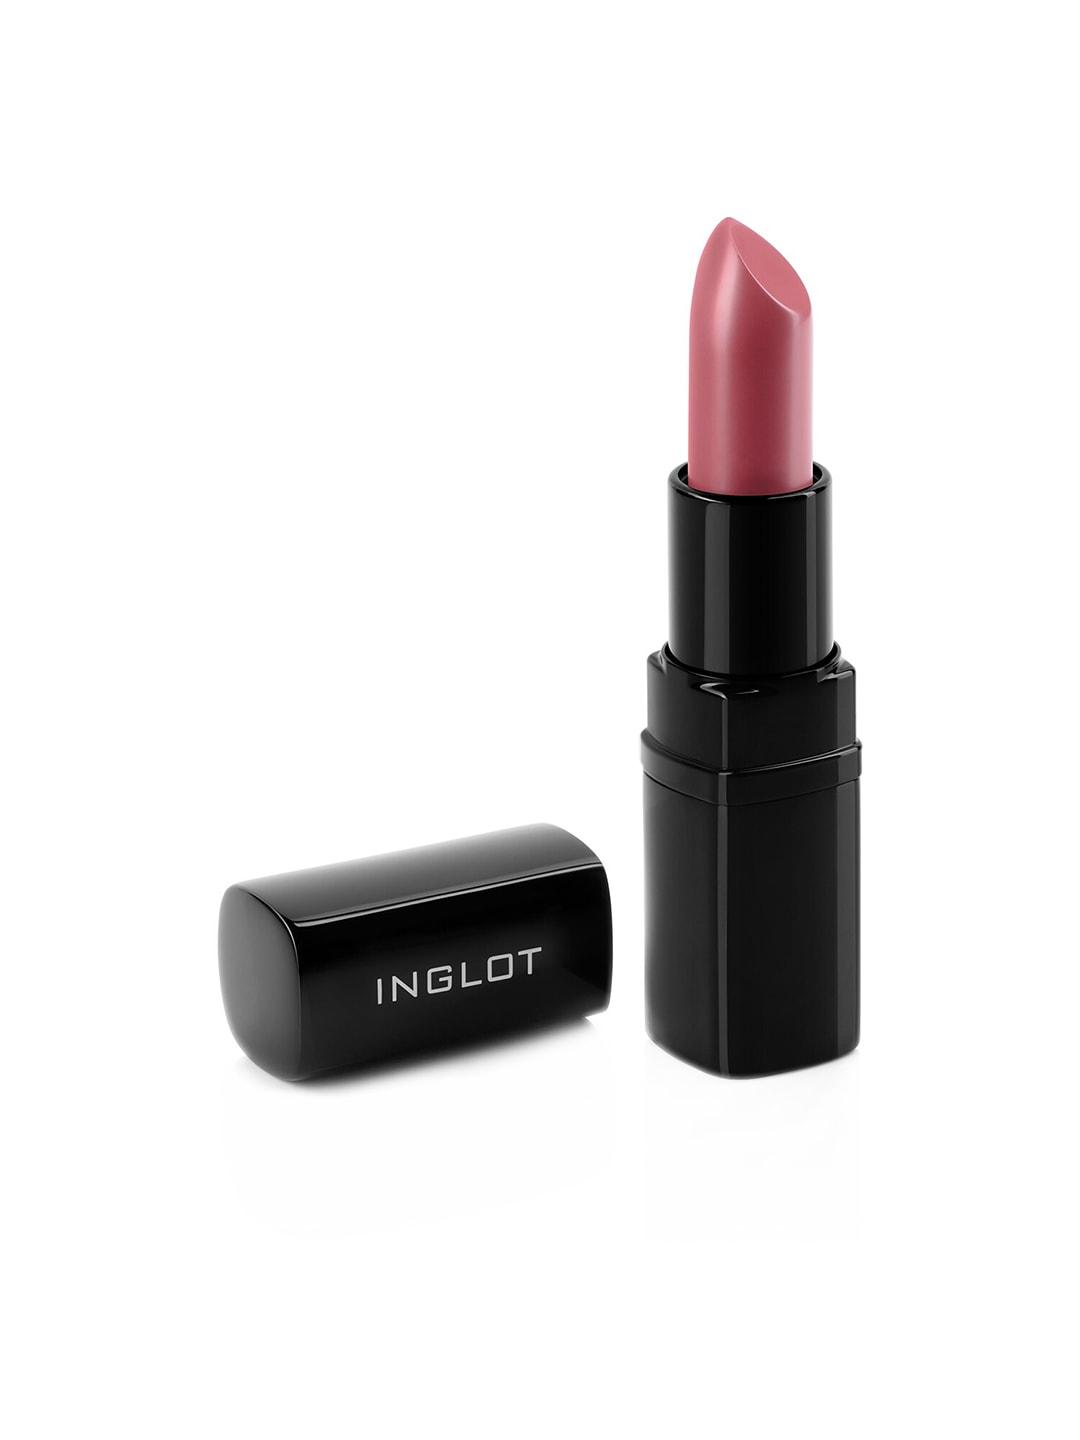 inglot long wearing matte lipstick 4.5 g - shade 417